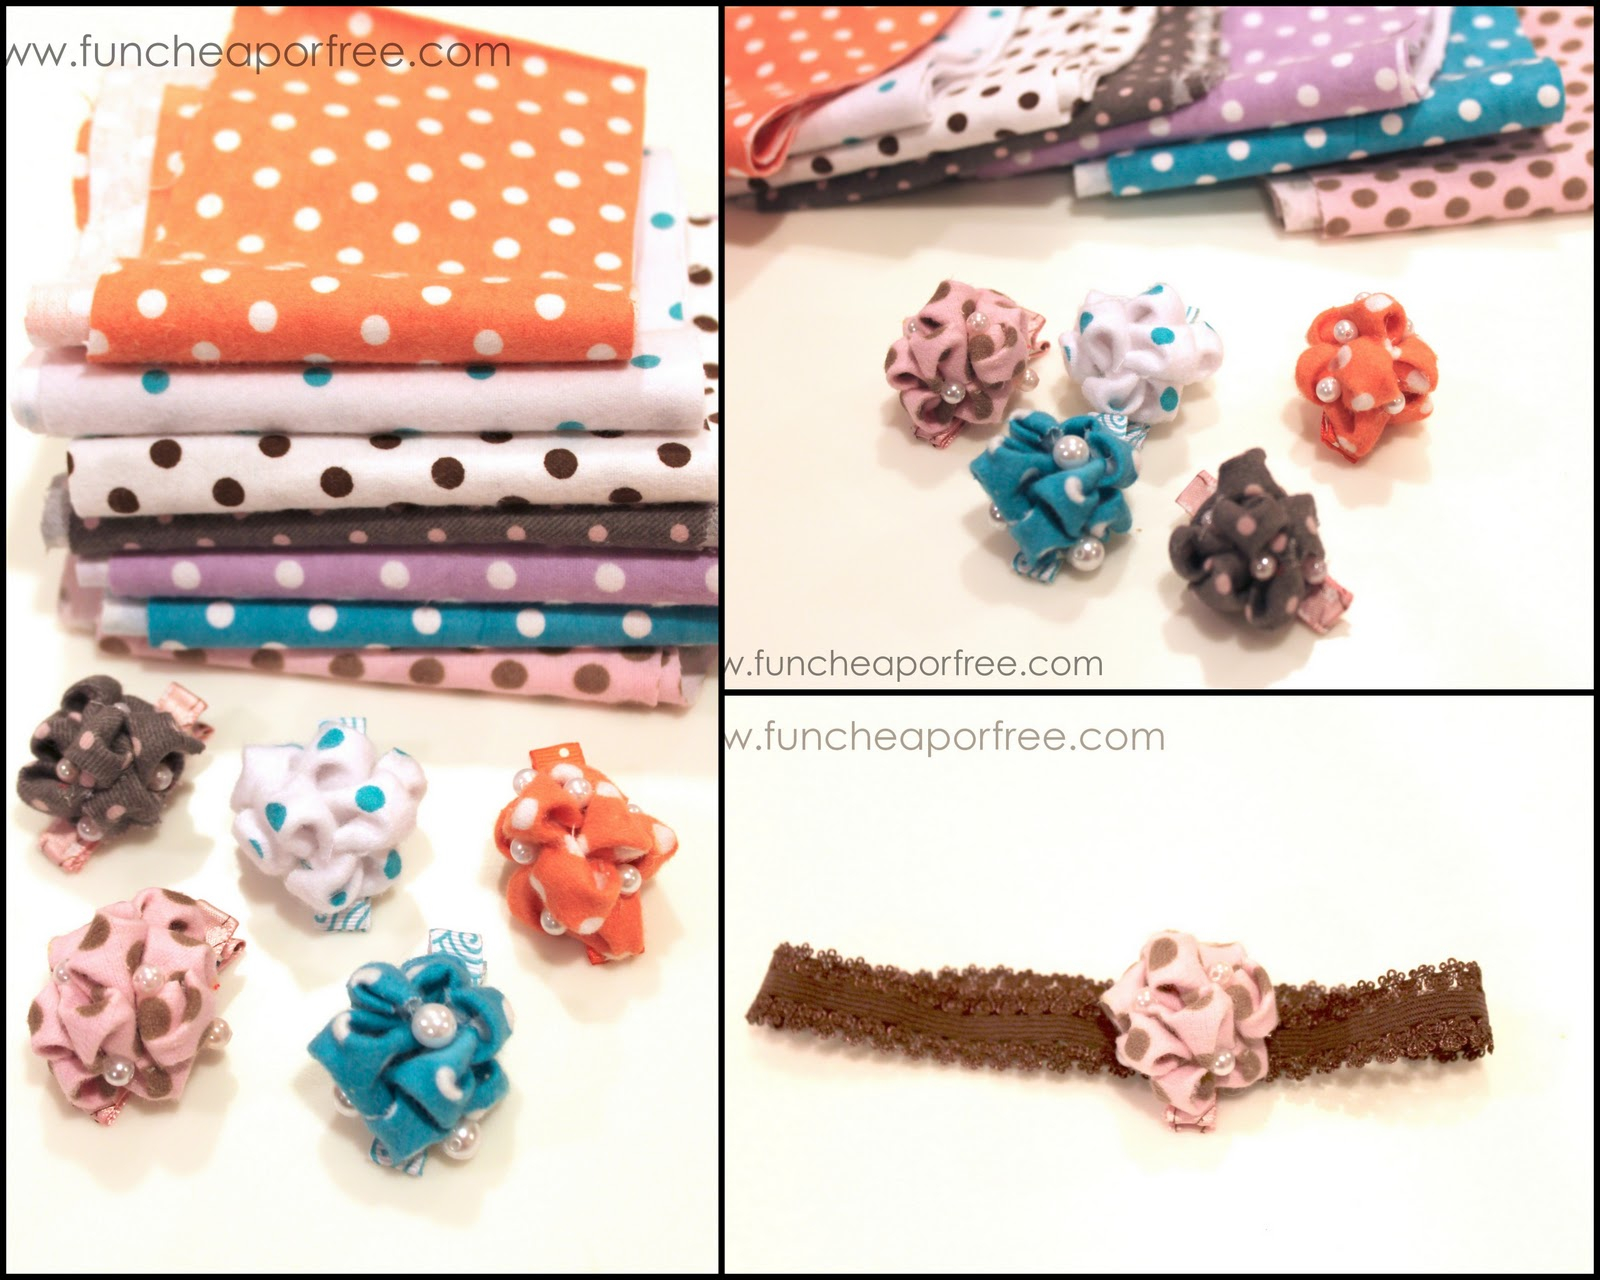 Crochet Hair Clip Patterns Free Bubble Flower Hair Clip Tutorial Fun Cheap Or Free